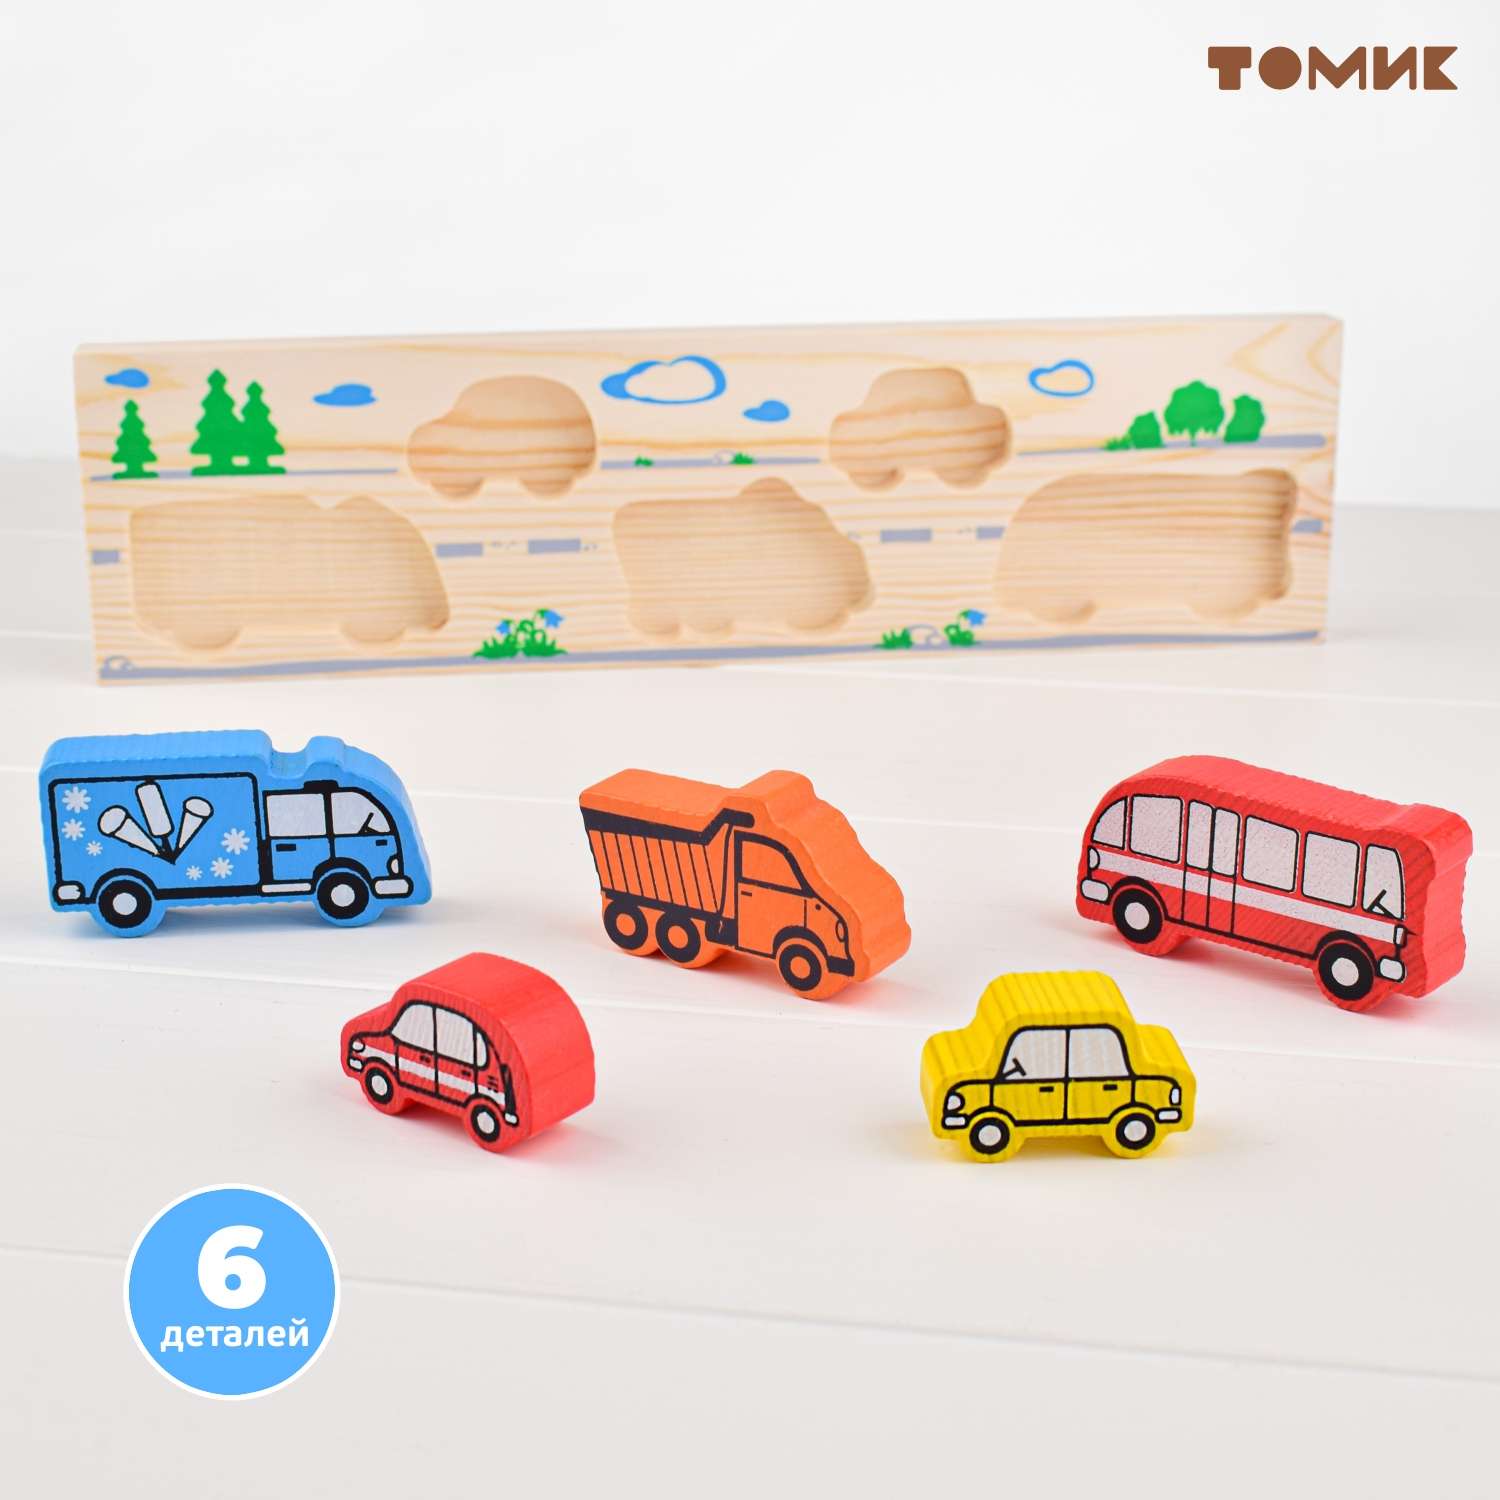 Рамка-Вкладыш Томик Транспорт 5 деталей 362 деревянная развивающая игрушка - фото 2